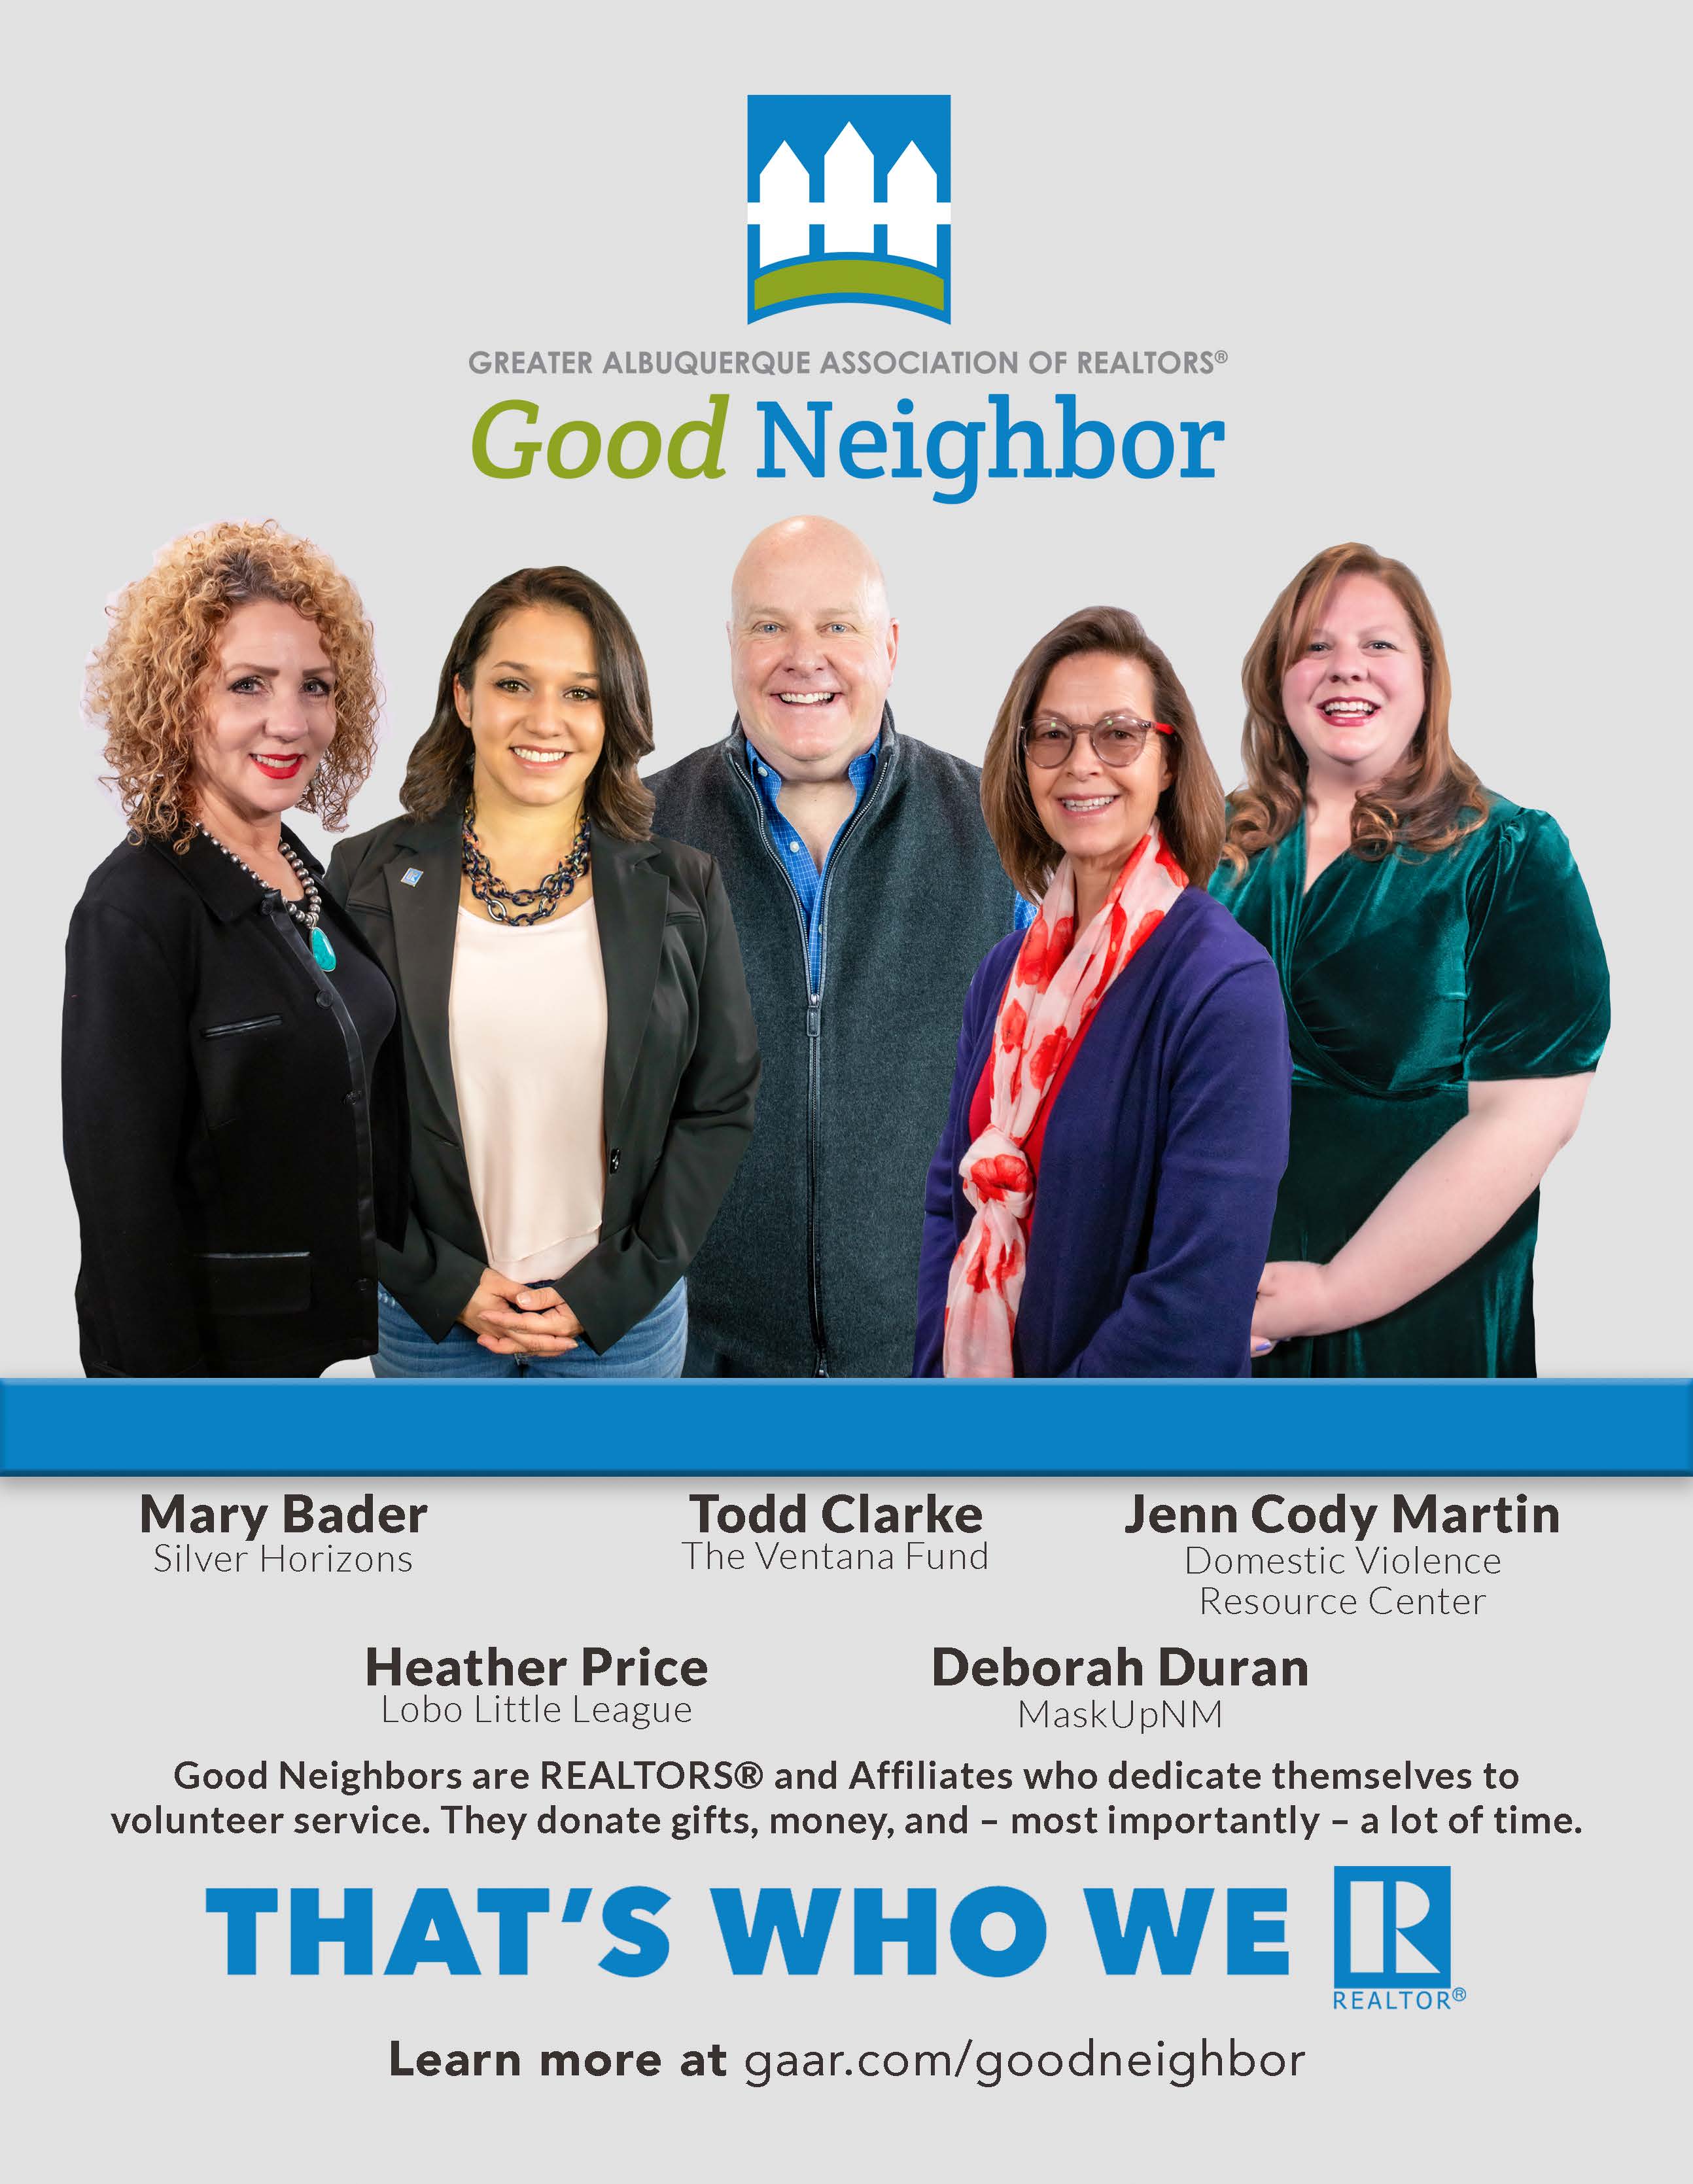 Sunday is deadline to apply for Good Neighbor Program